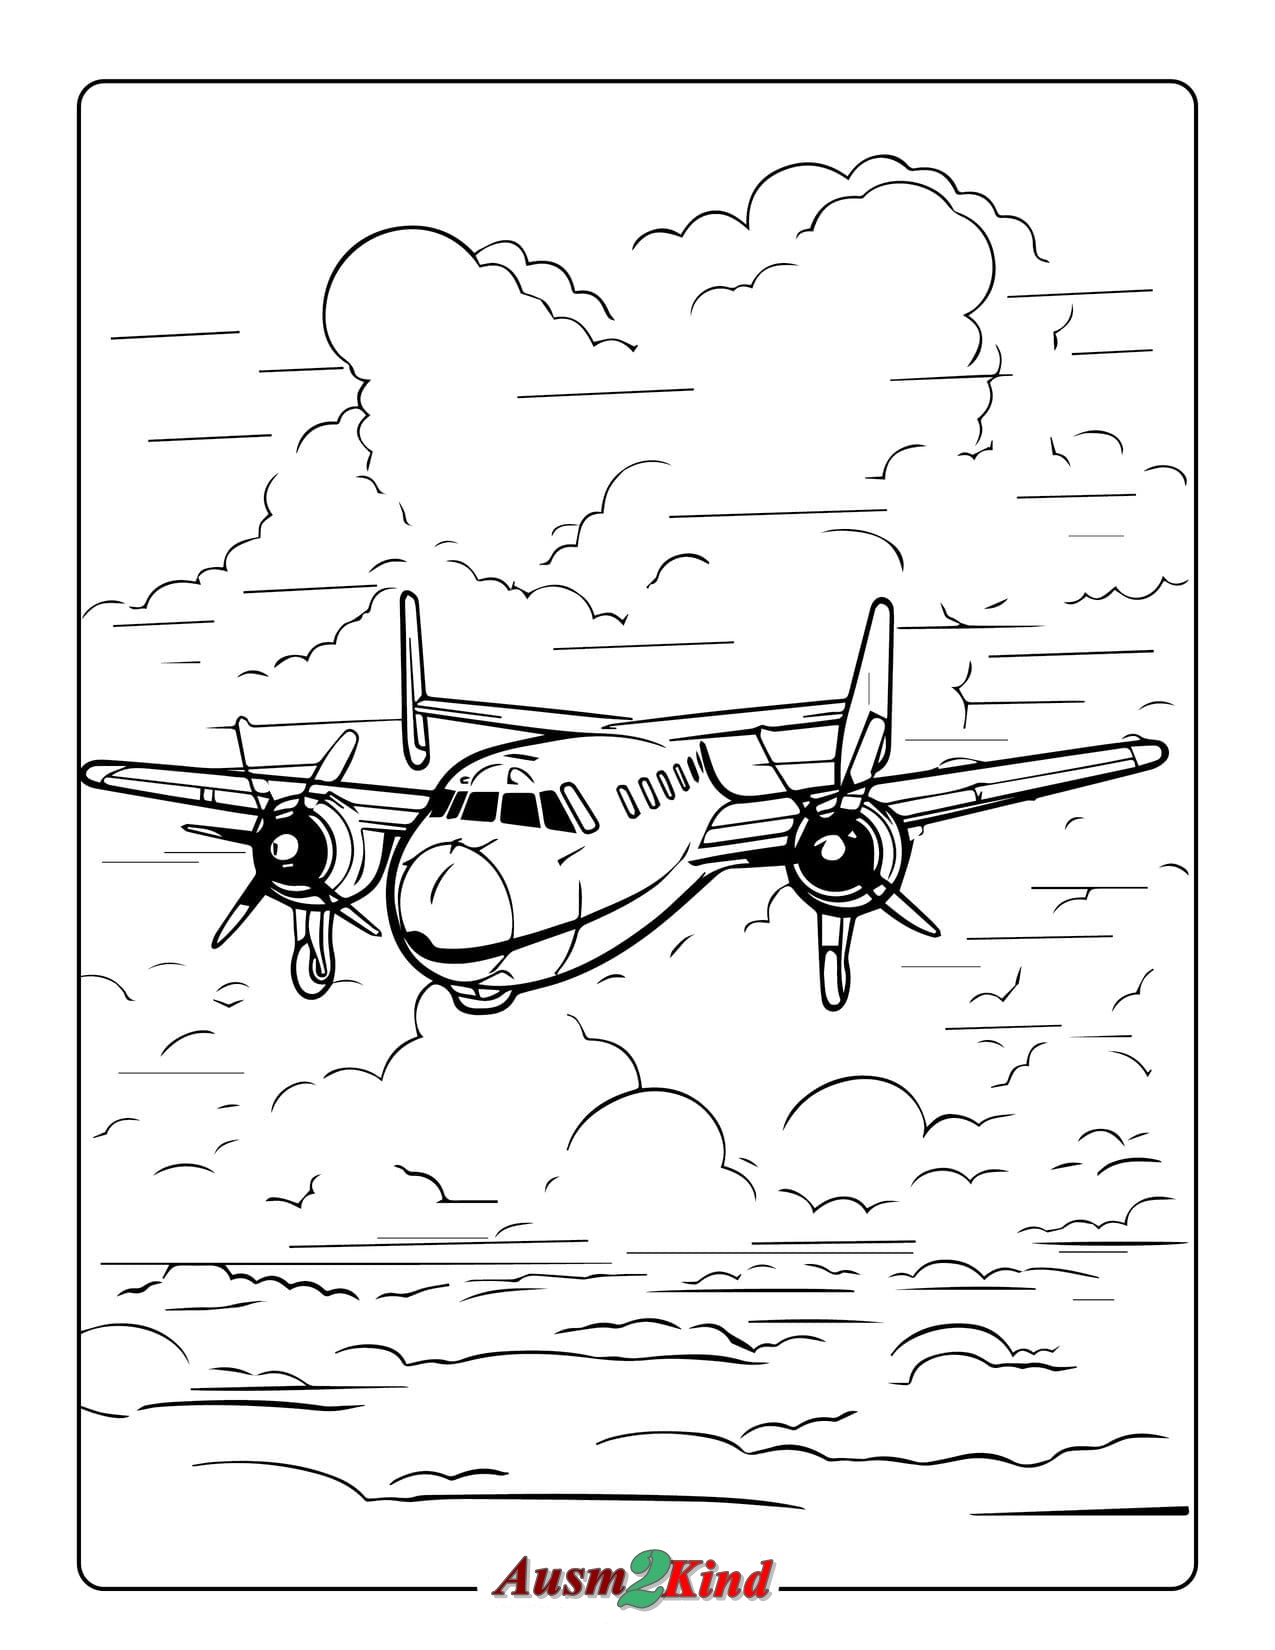 Ausmalbild Flugzeug Skyline zum Ausdrucken